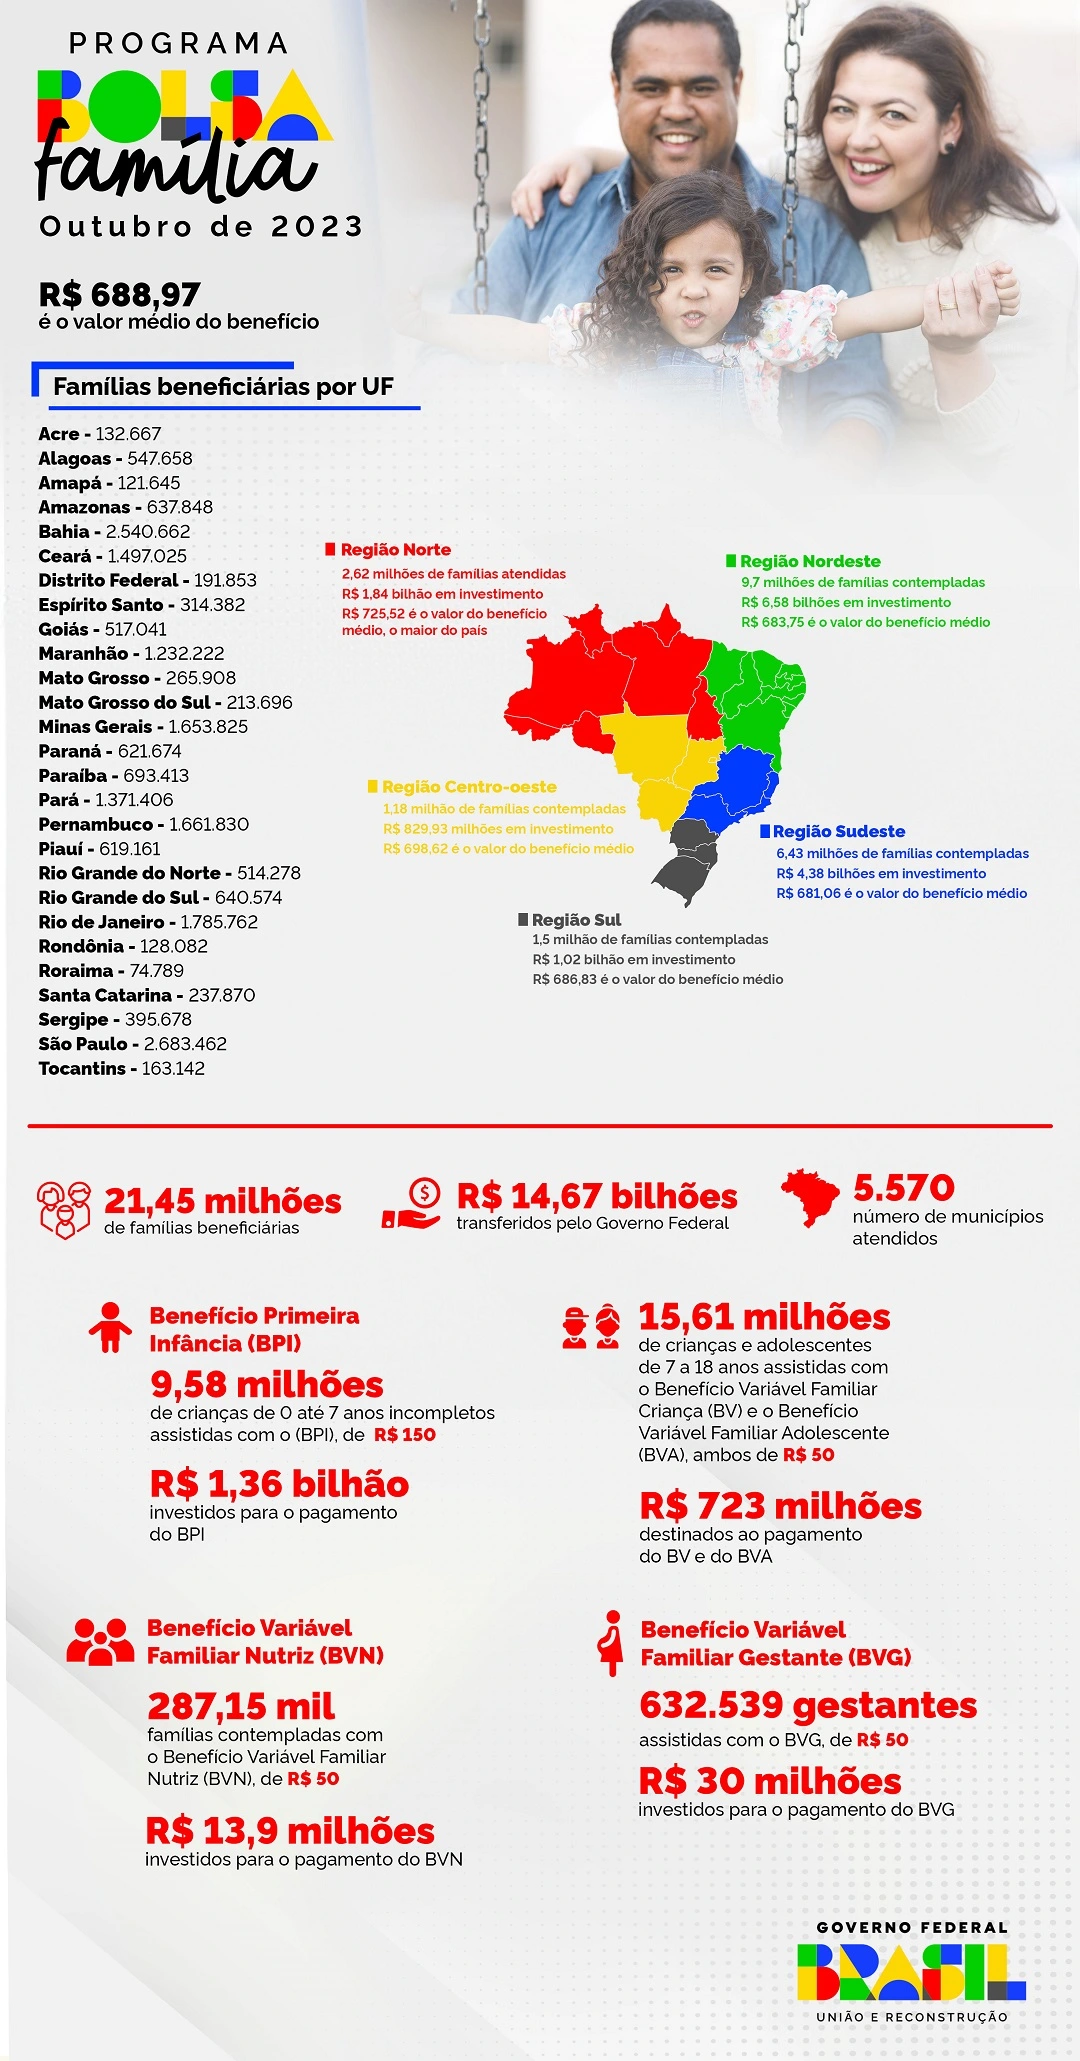 Infográfico - Distribuição de recursos por região e UF